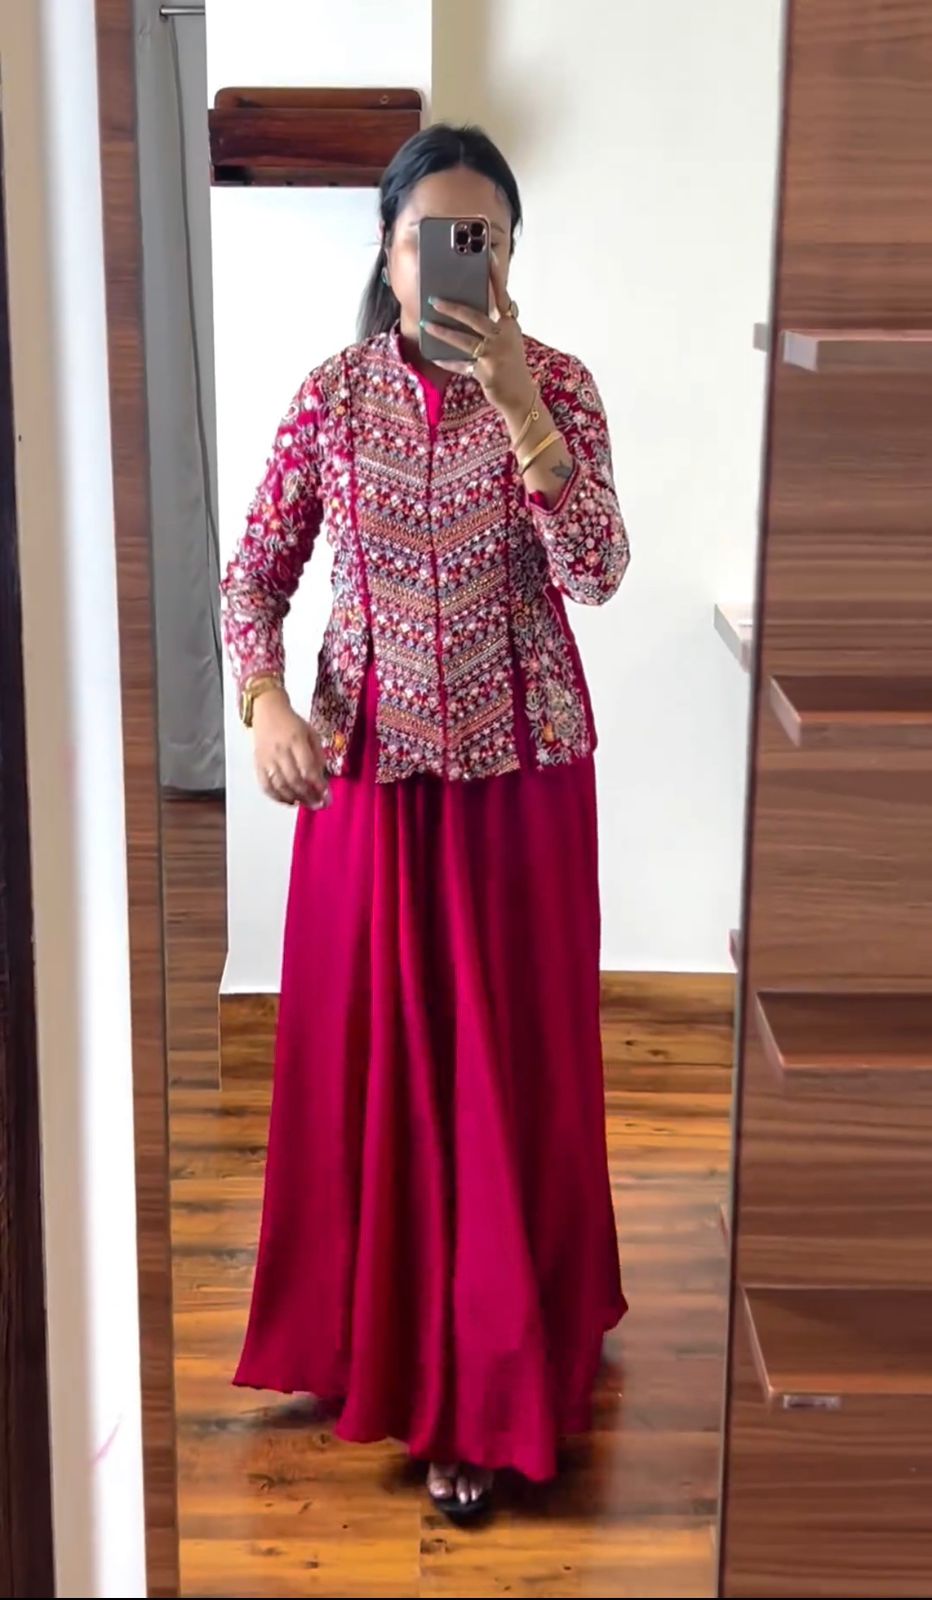 Girls Lehenga Choli Long Jacket Ethnic Party Wear 4-14 Yrs Pink Skirt Set  With Free Shipping Within US - Etsy | Pink skirt set, Pink skirt, Lehenga  choli